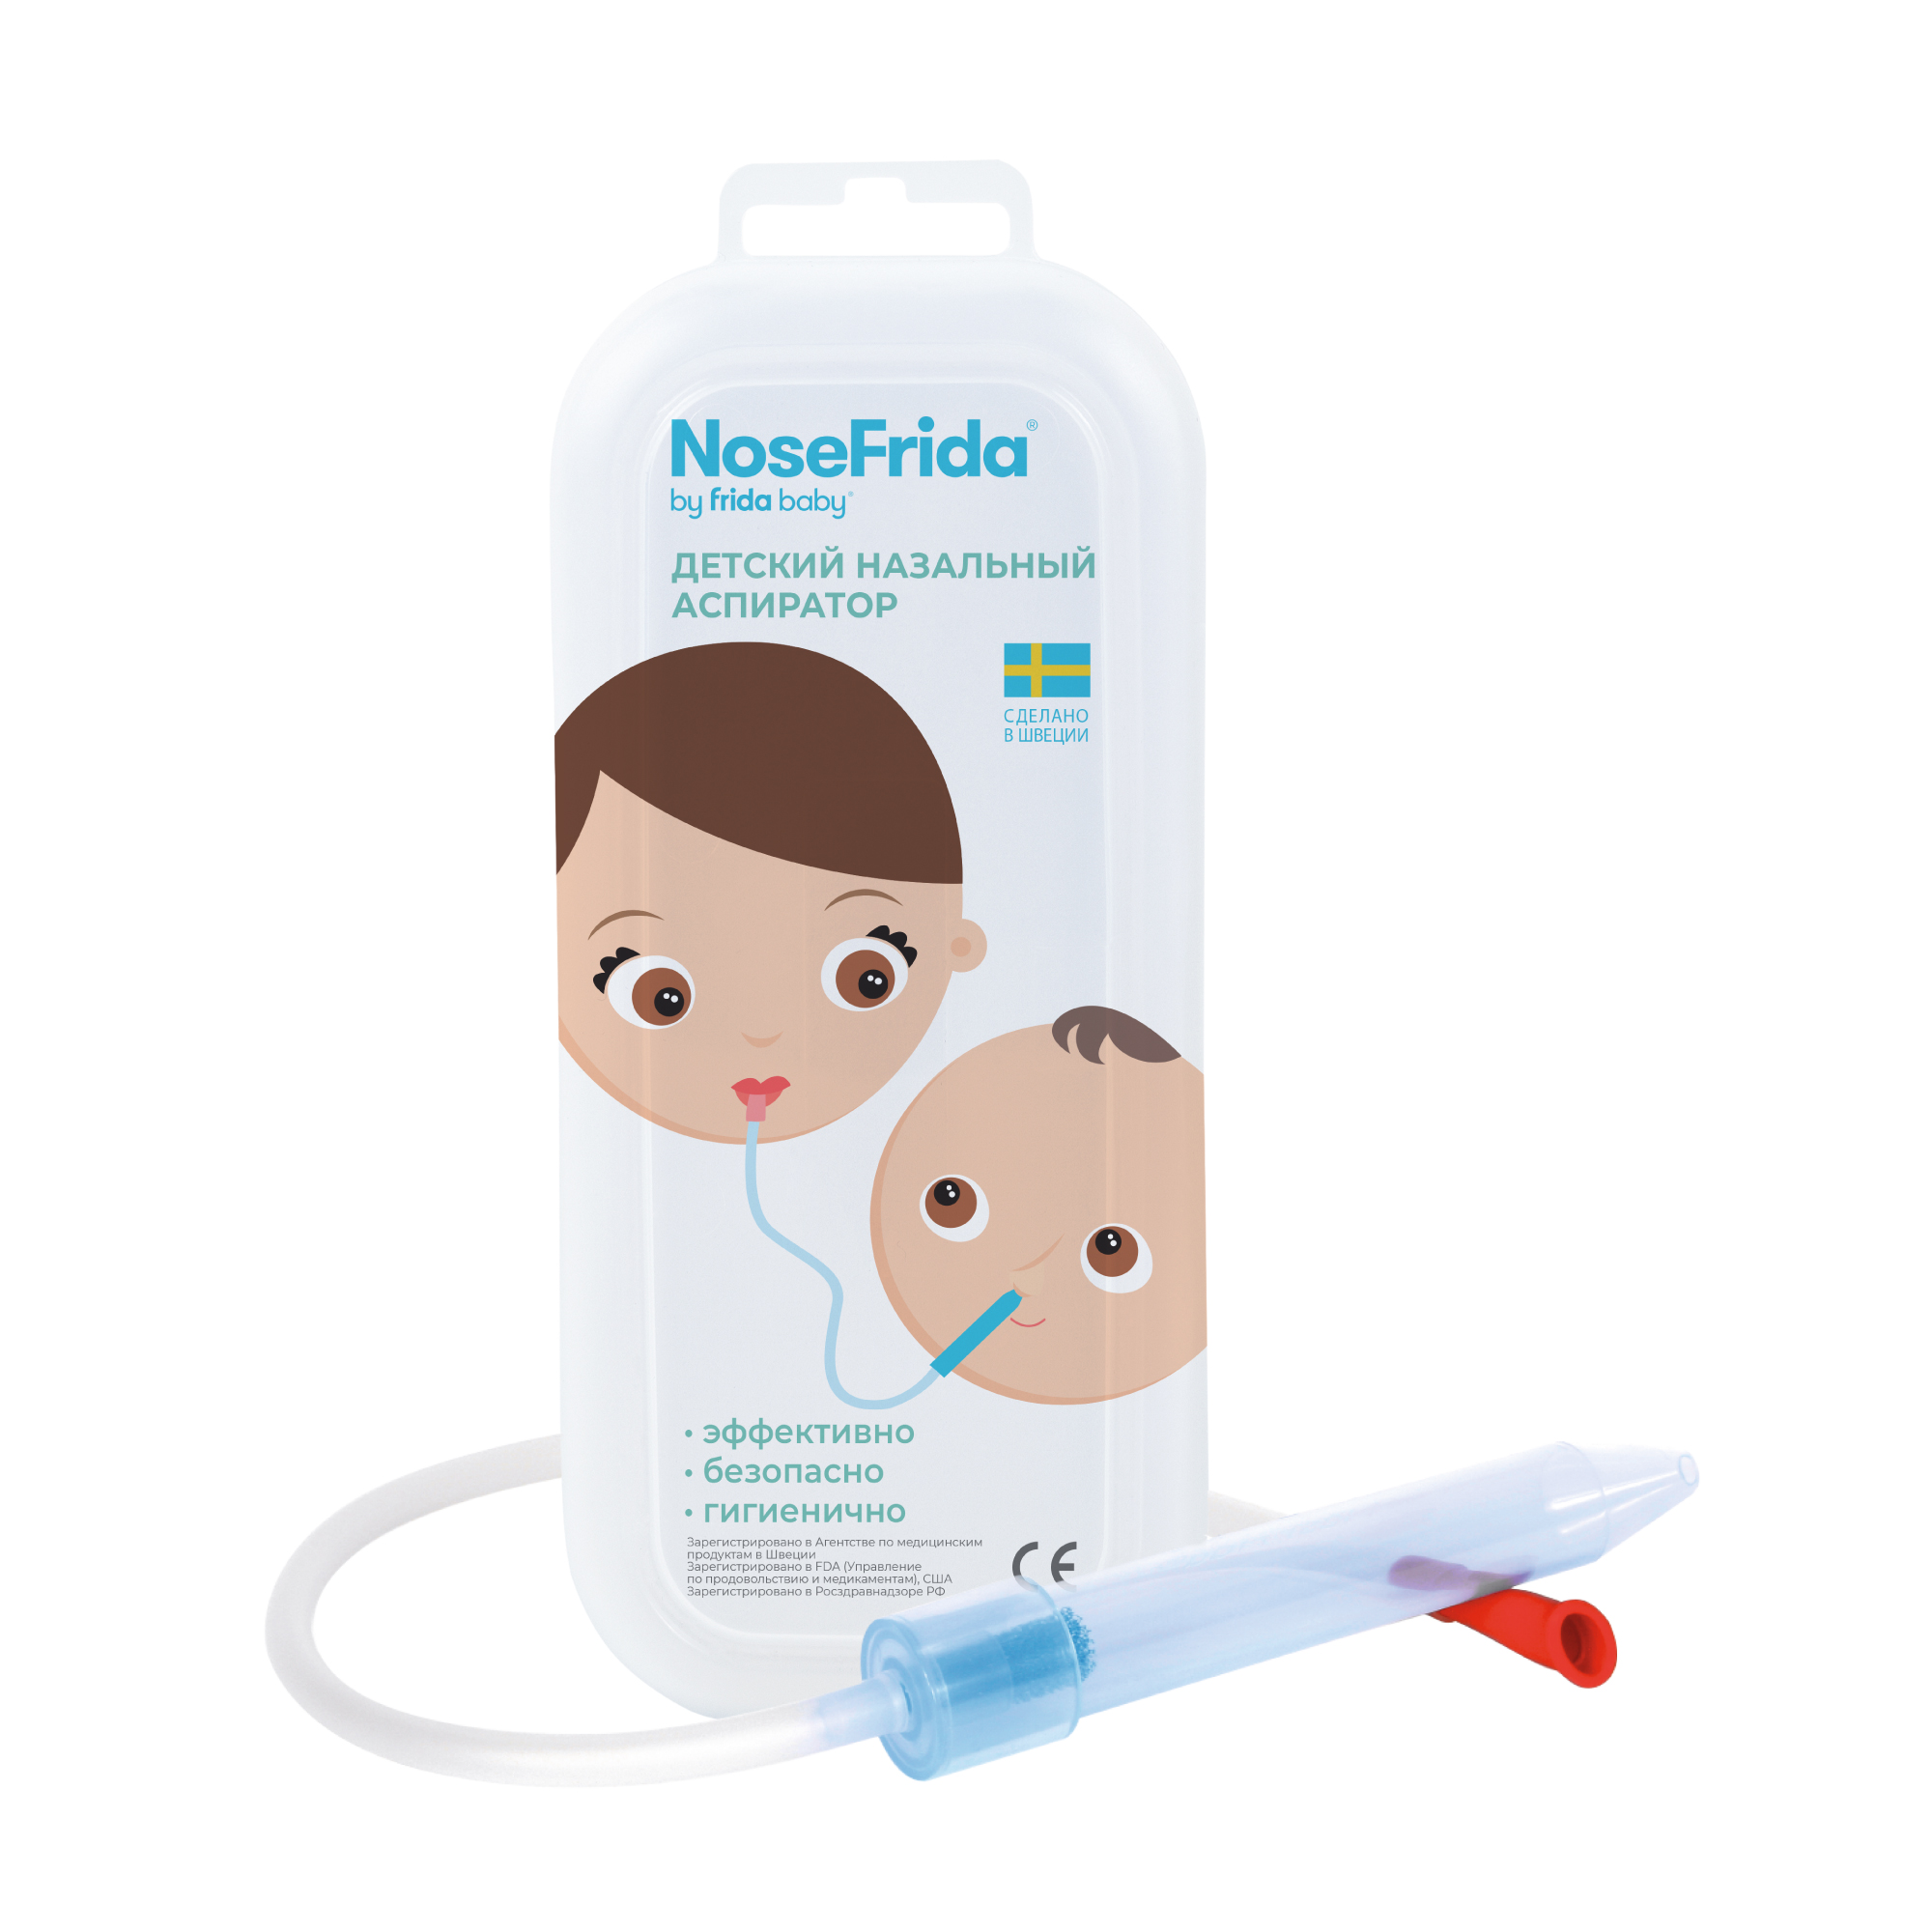 Nosefrida (Носфрида), аспиратор назальный для детей канпол аспиратор назальный 0м 56 007